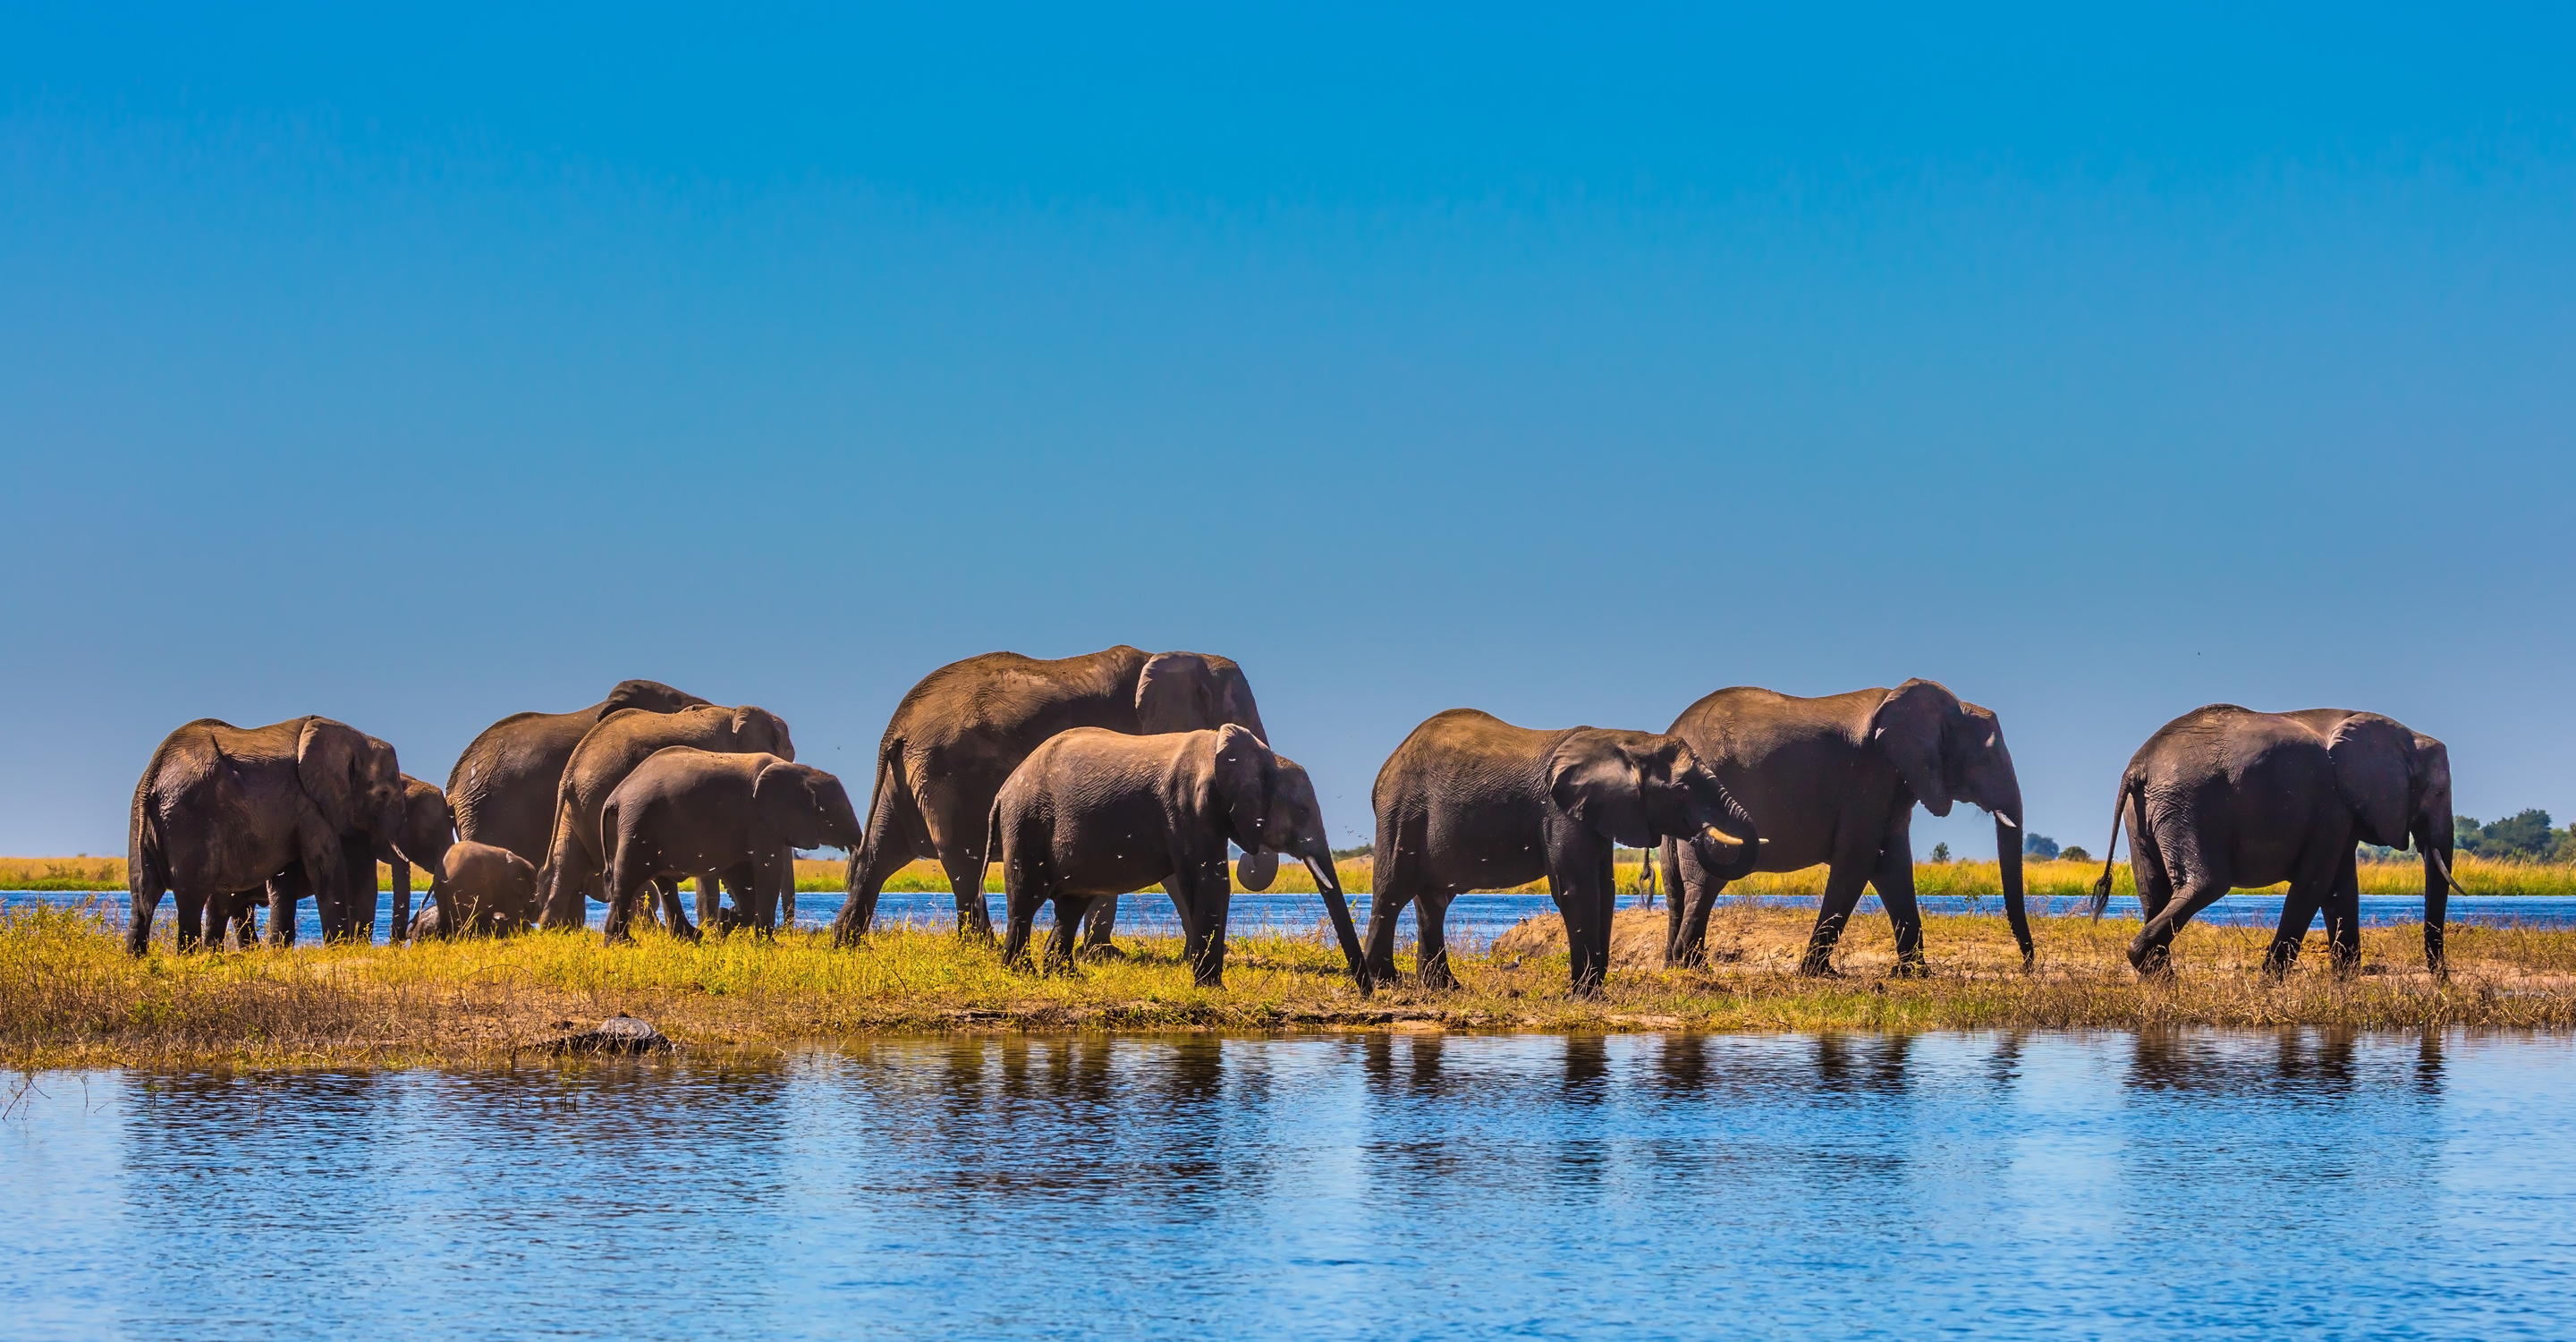 African elephants walk past a waterhole in Chobe National Park, Botswana